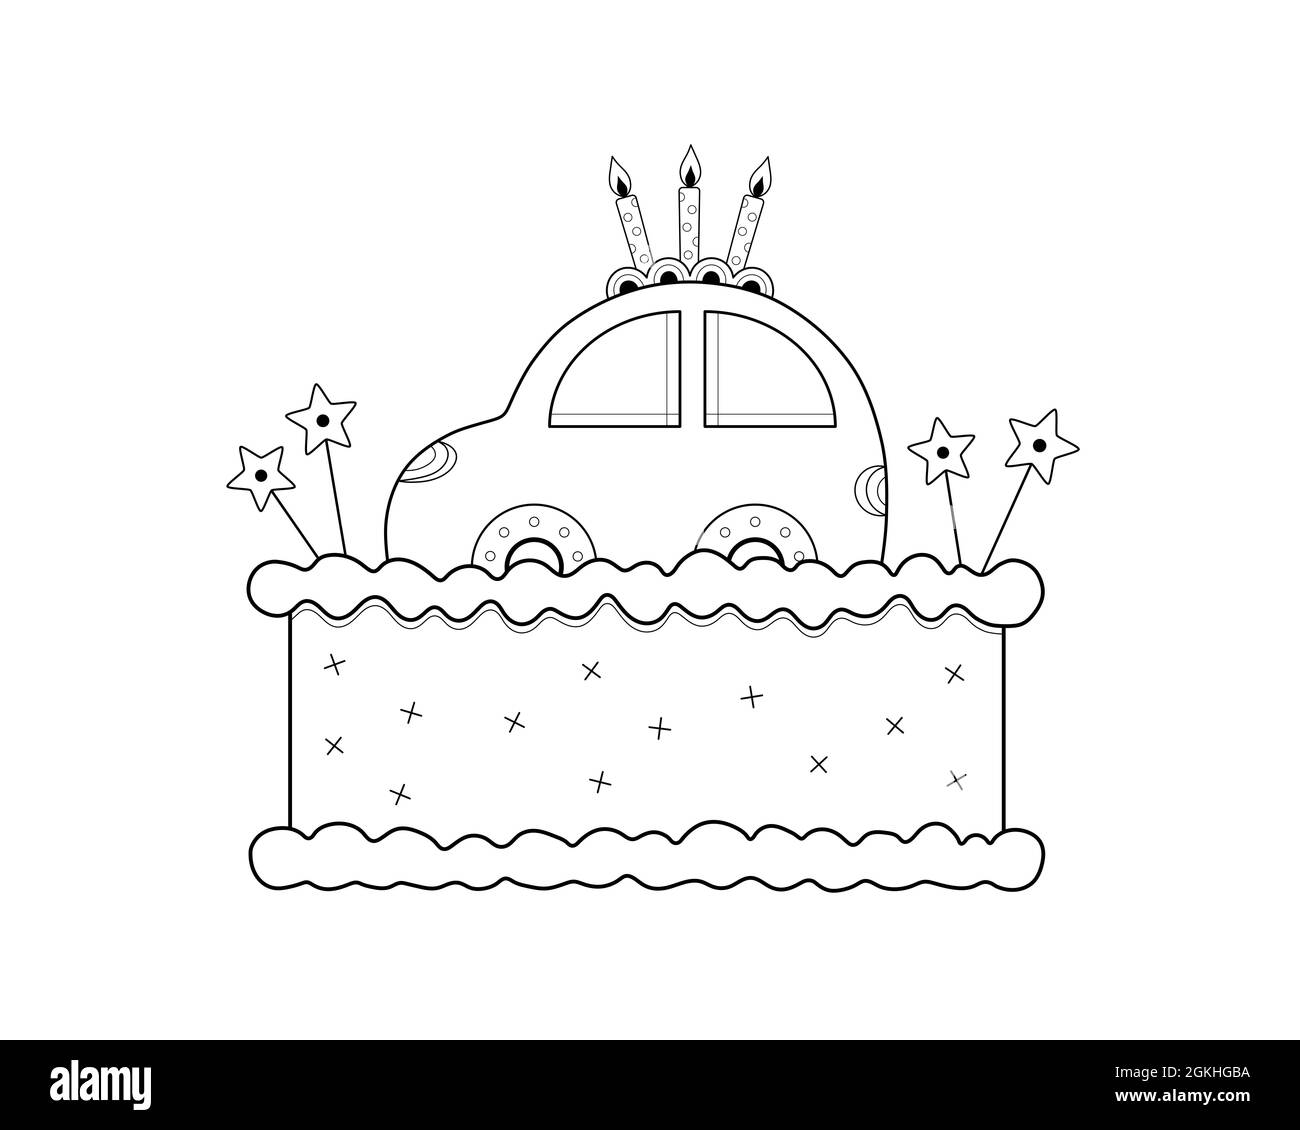 torta di compleanno dei bambini in bianco e nero con carino auto sulla parte superiore e tre candele che bruciano, illustrazione di arte di linea isolata su sfondo bianco Foto Stock